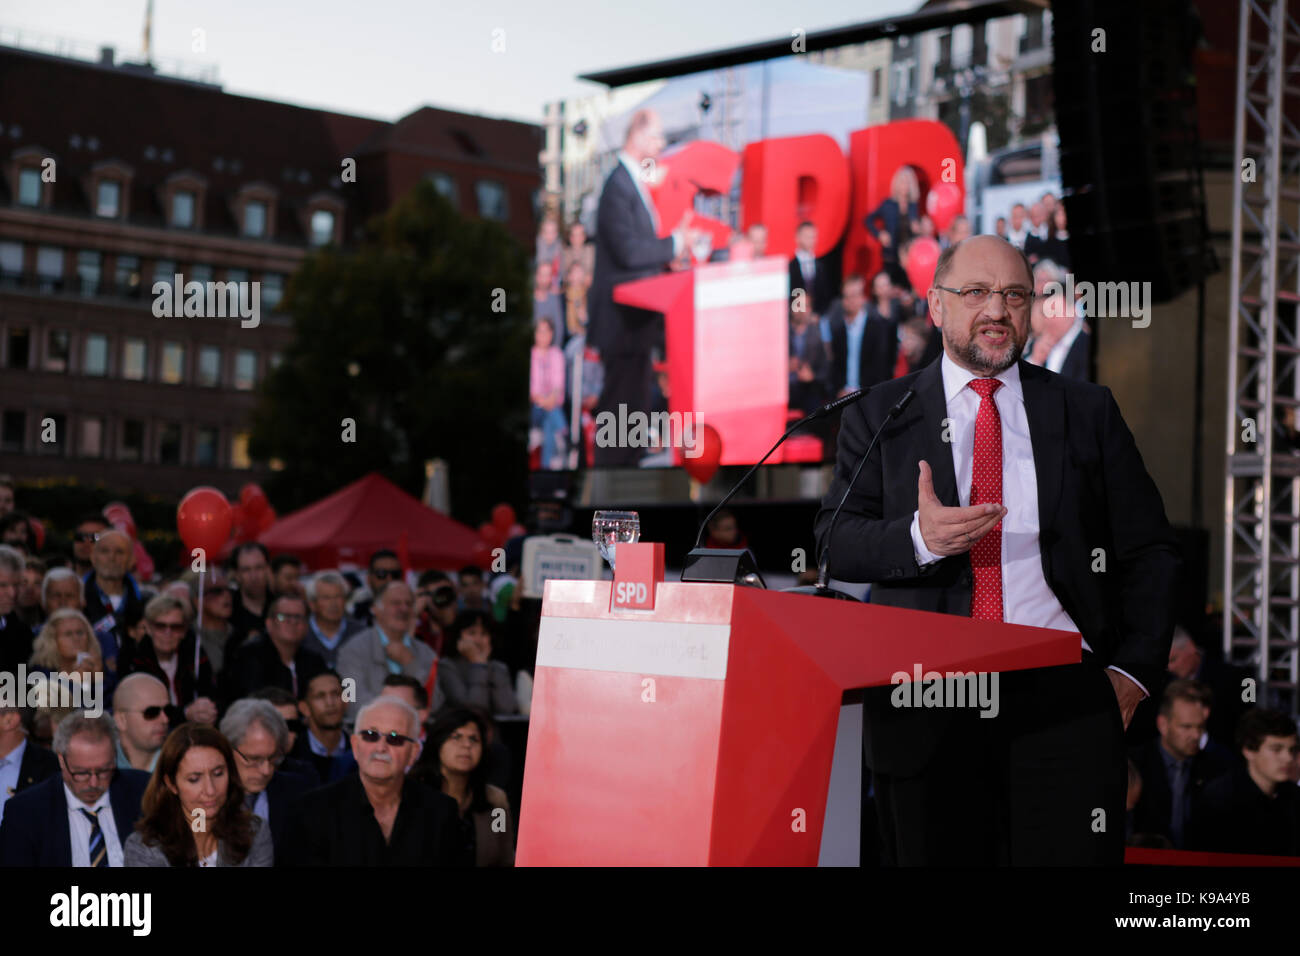 Berlino, Germania. Il 22 settembre, 2017. Martin Schulz affronta il rally. Il candidato per il tedesco Chancellorship della SPD (partito socialdemocratico tedesco) è stata il principale oratore ad un rally di grandi dimensioni nel centro di Berlino, due giorni prima delle elezioni tedesche. Credito: SOPA Immagini limitata/Alamy Live News Foto Stock